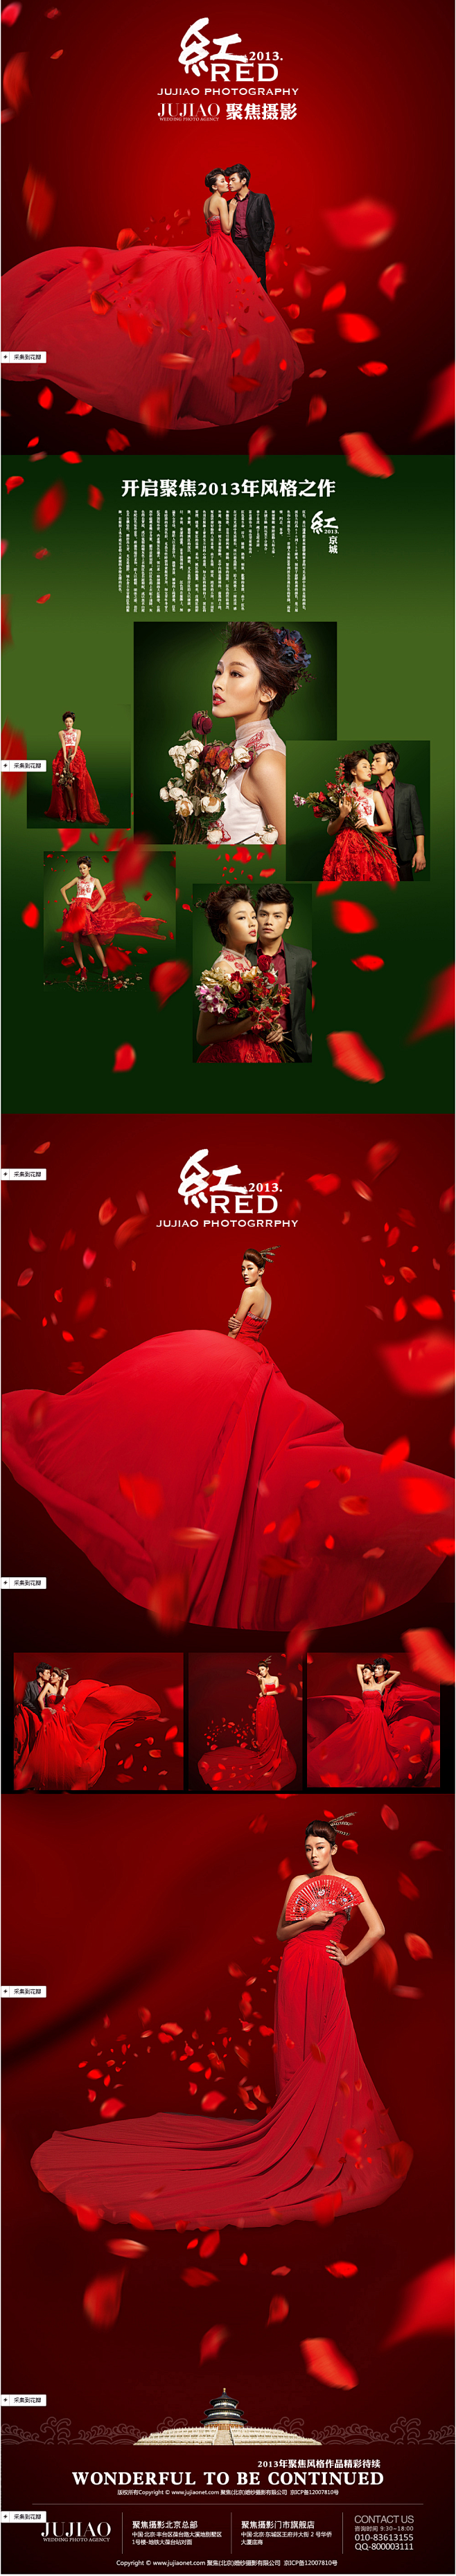 北京婚纱摄影 聚焦摄影2013风格之作第...